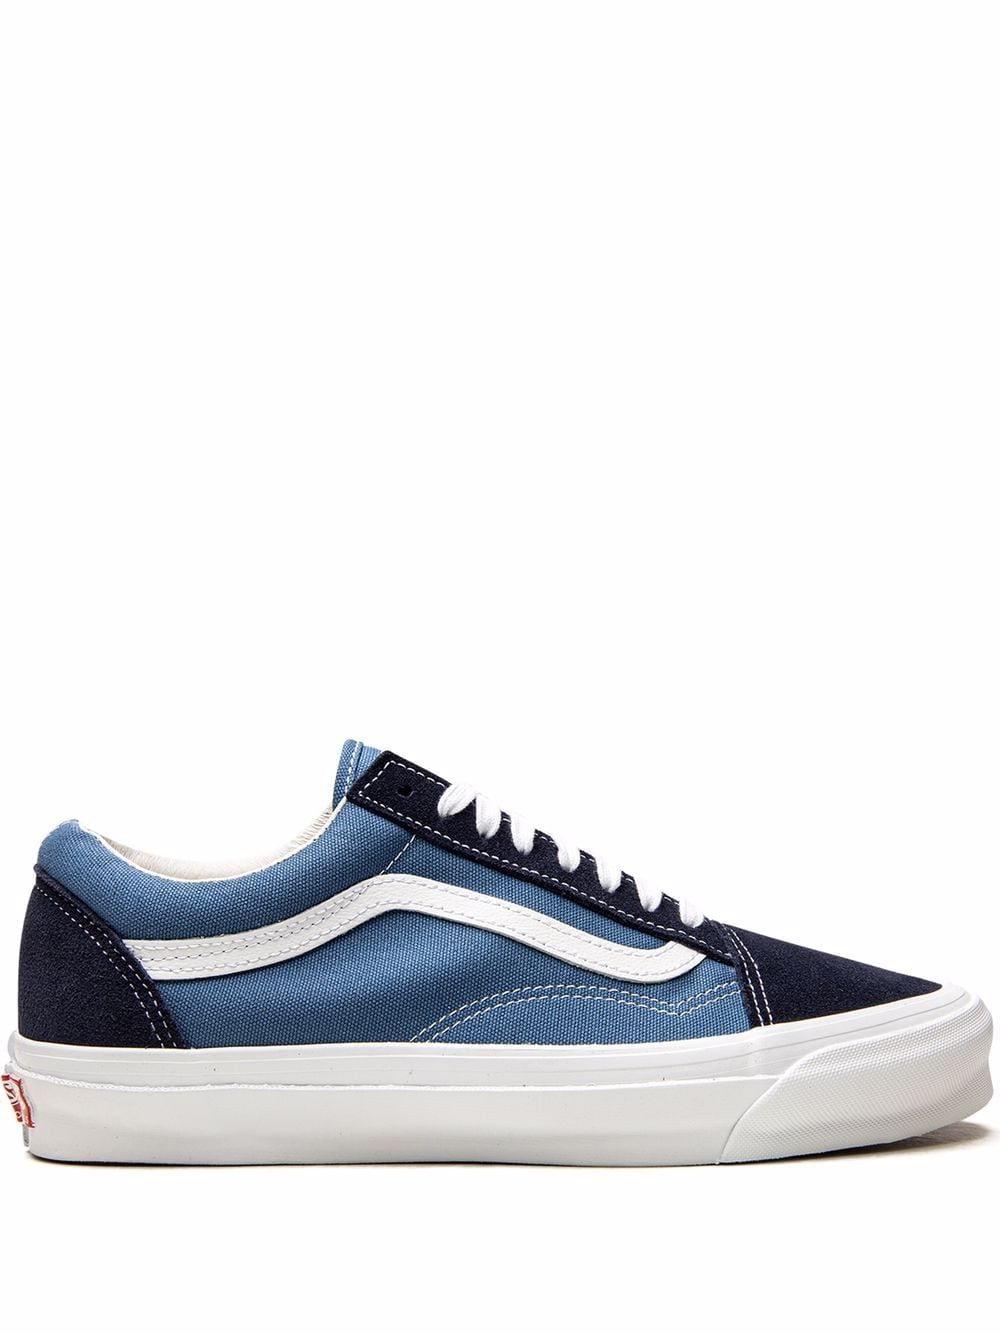 Vans OG Old Skool LX sneakers - Blue von Vans